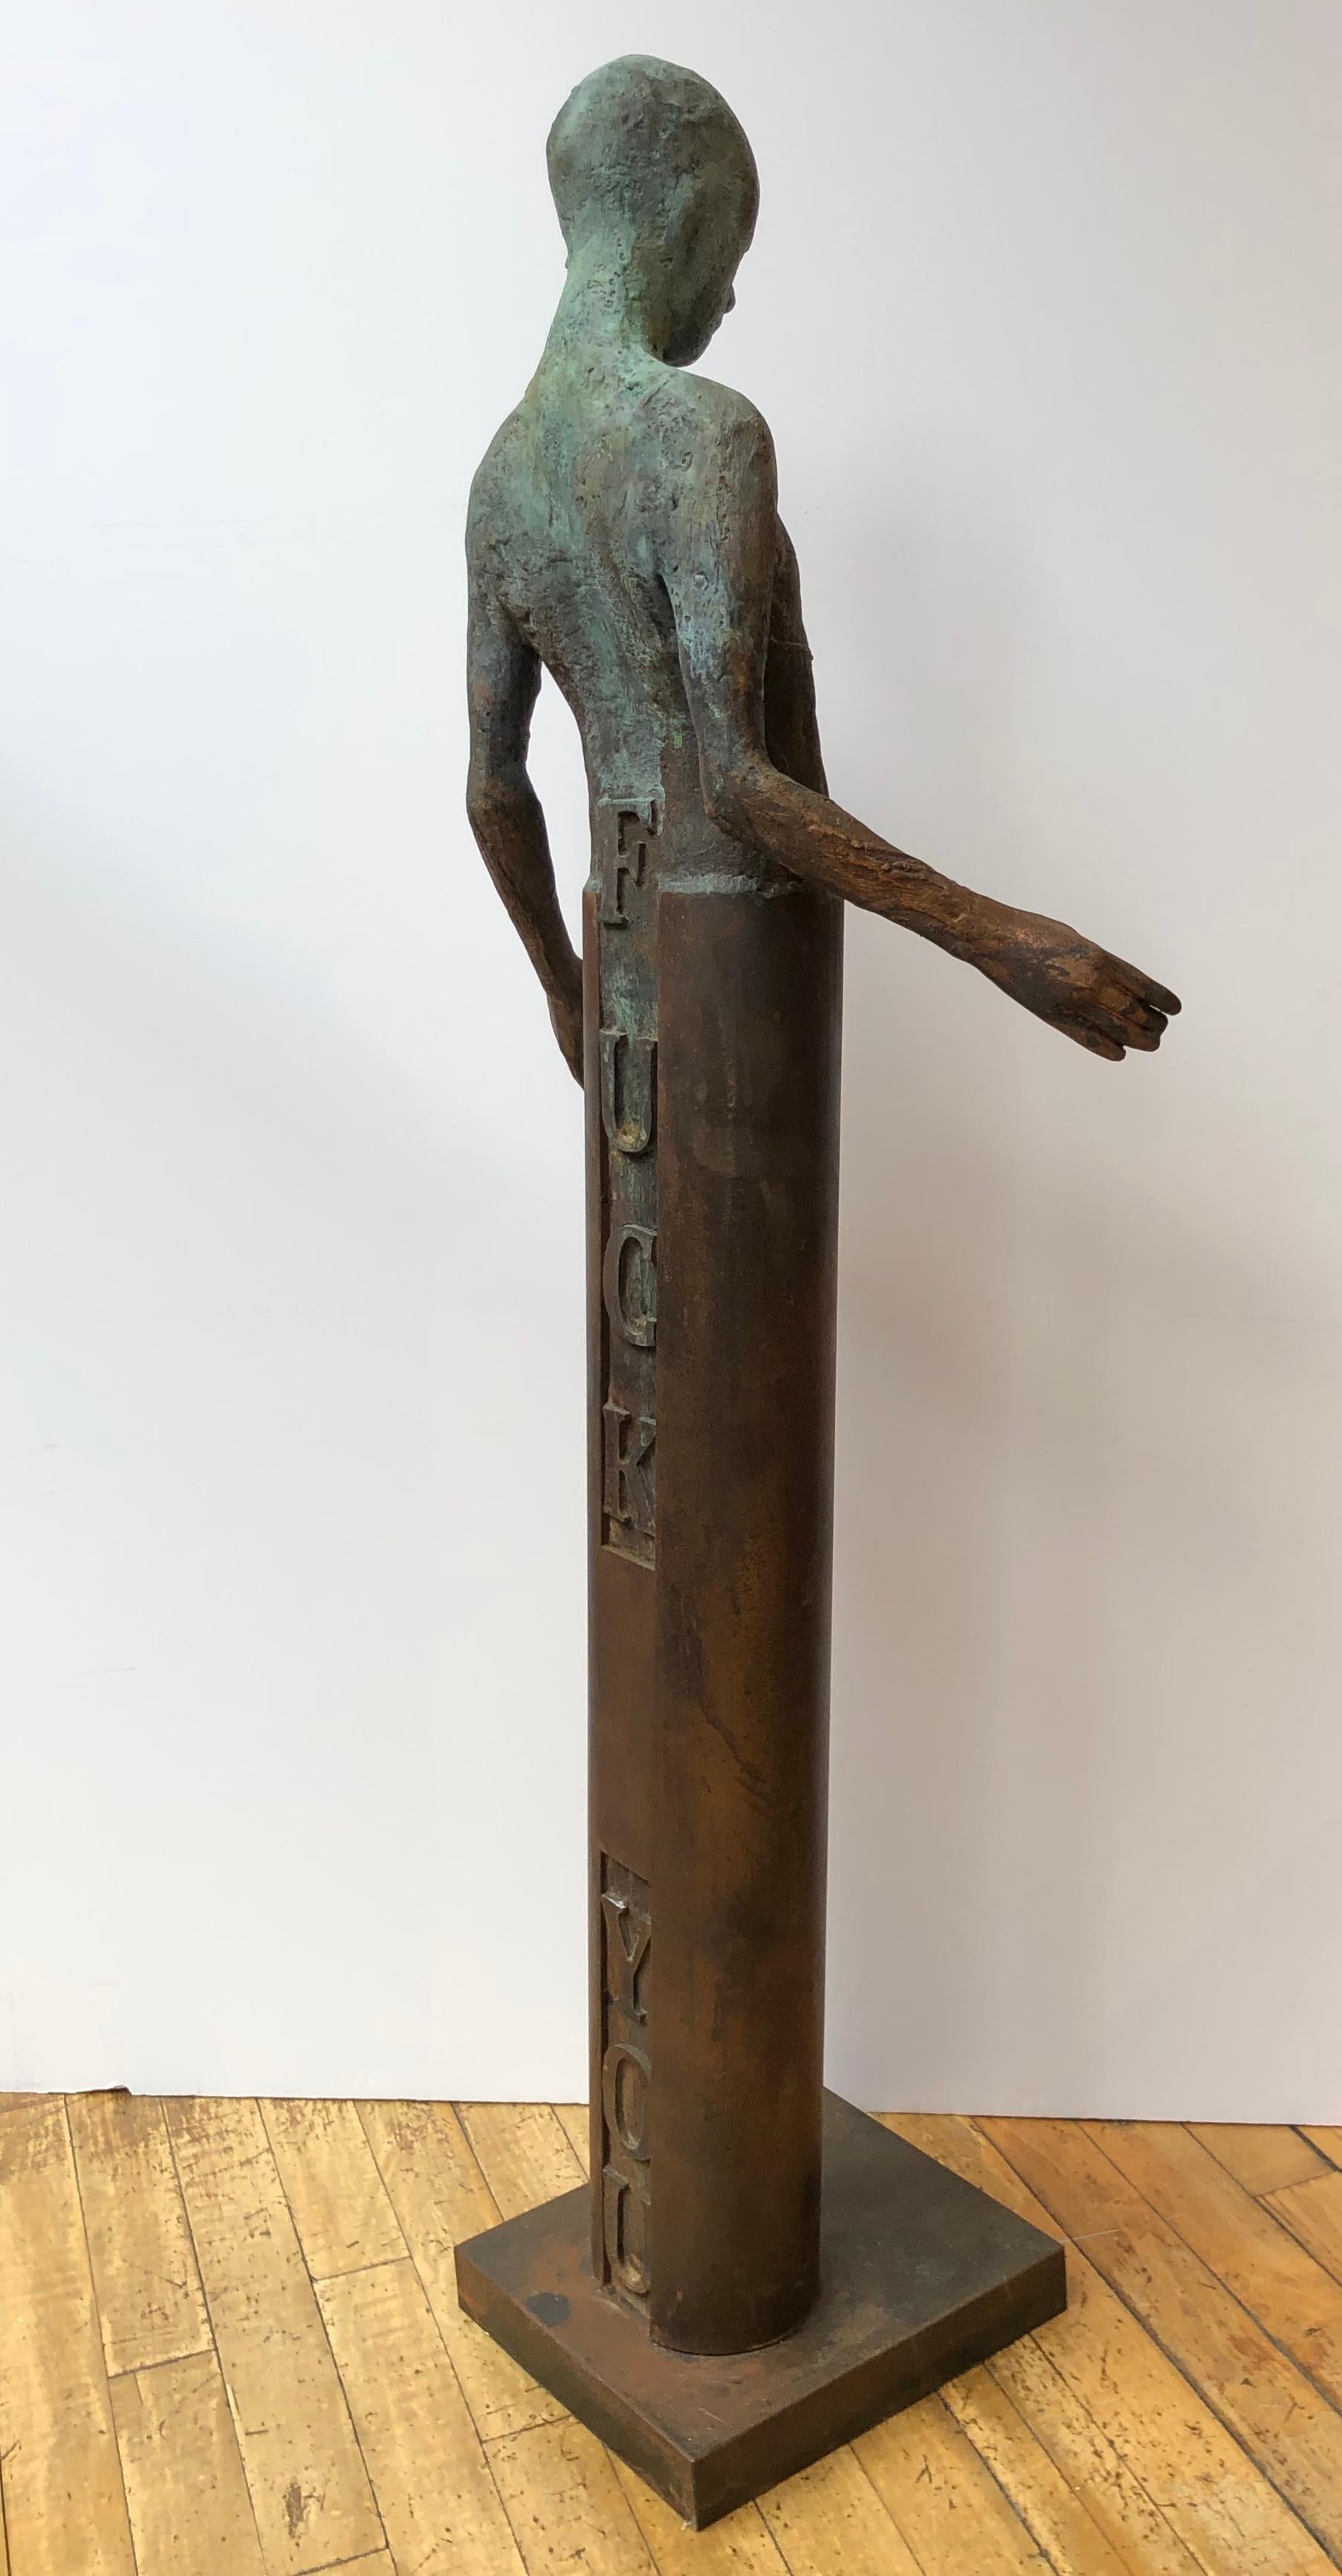 Apologize, Bronze Sculpture of a Single Figure, 